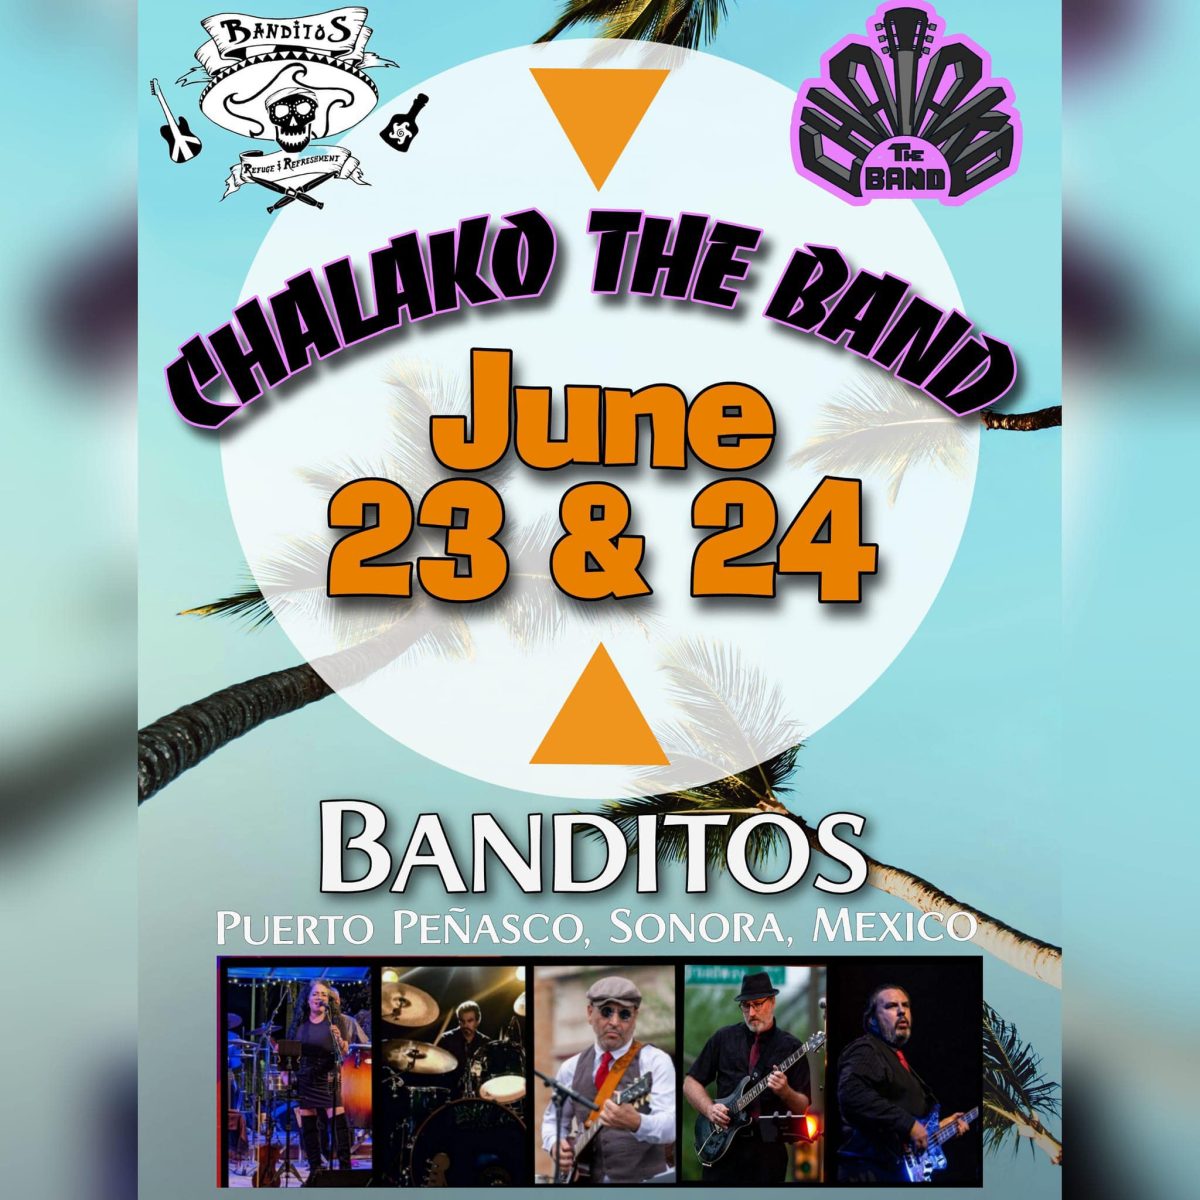 banditos-june-23-24-chalako-1200x1200 Chalako the Band @ Banditos